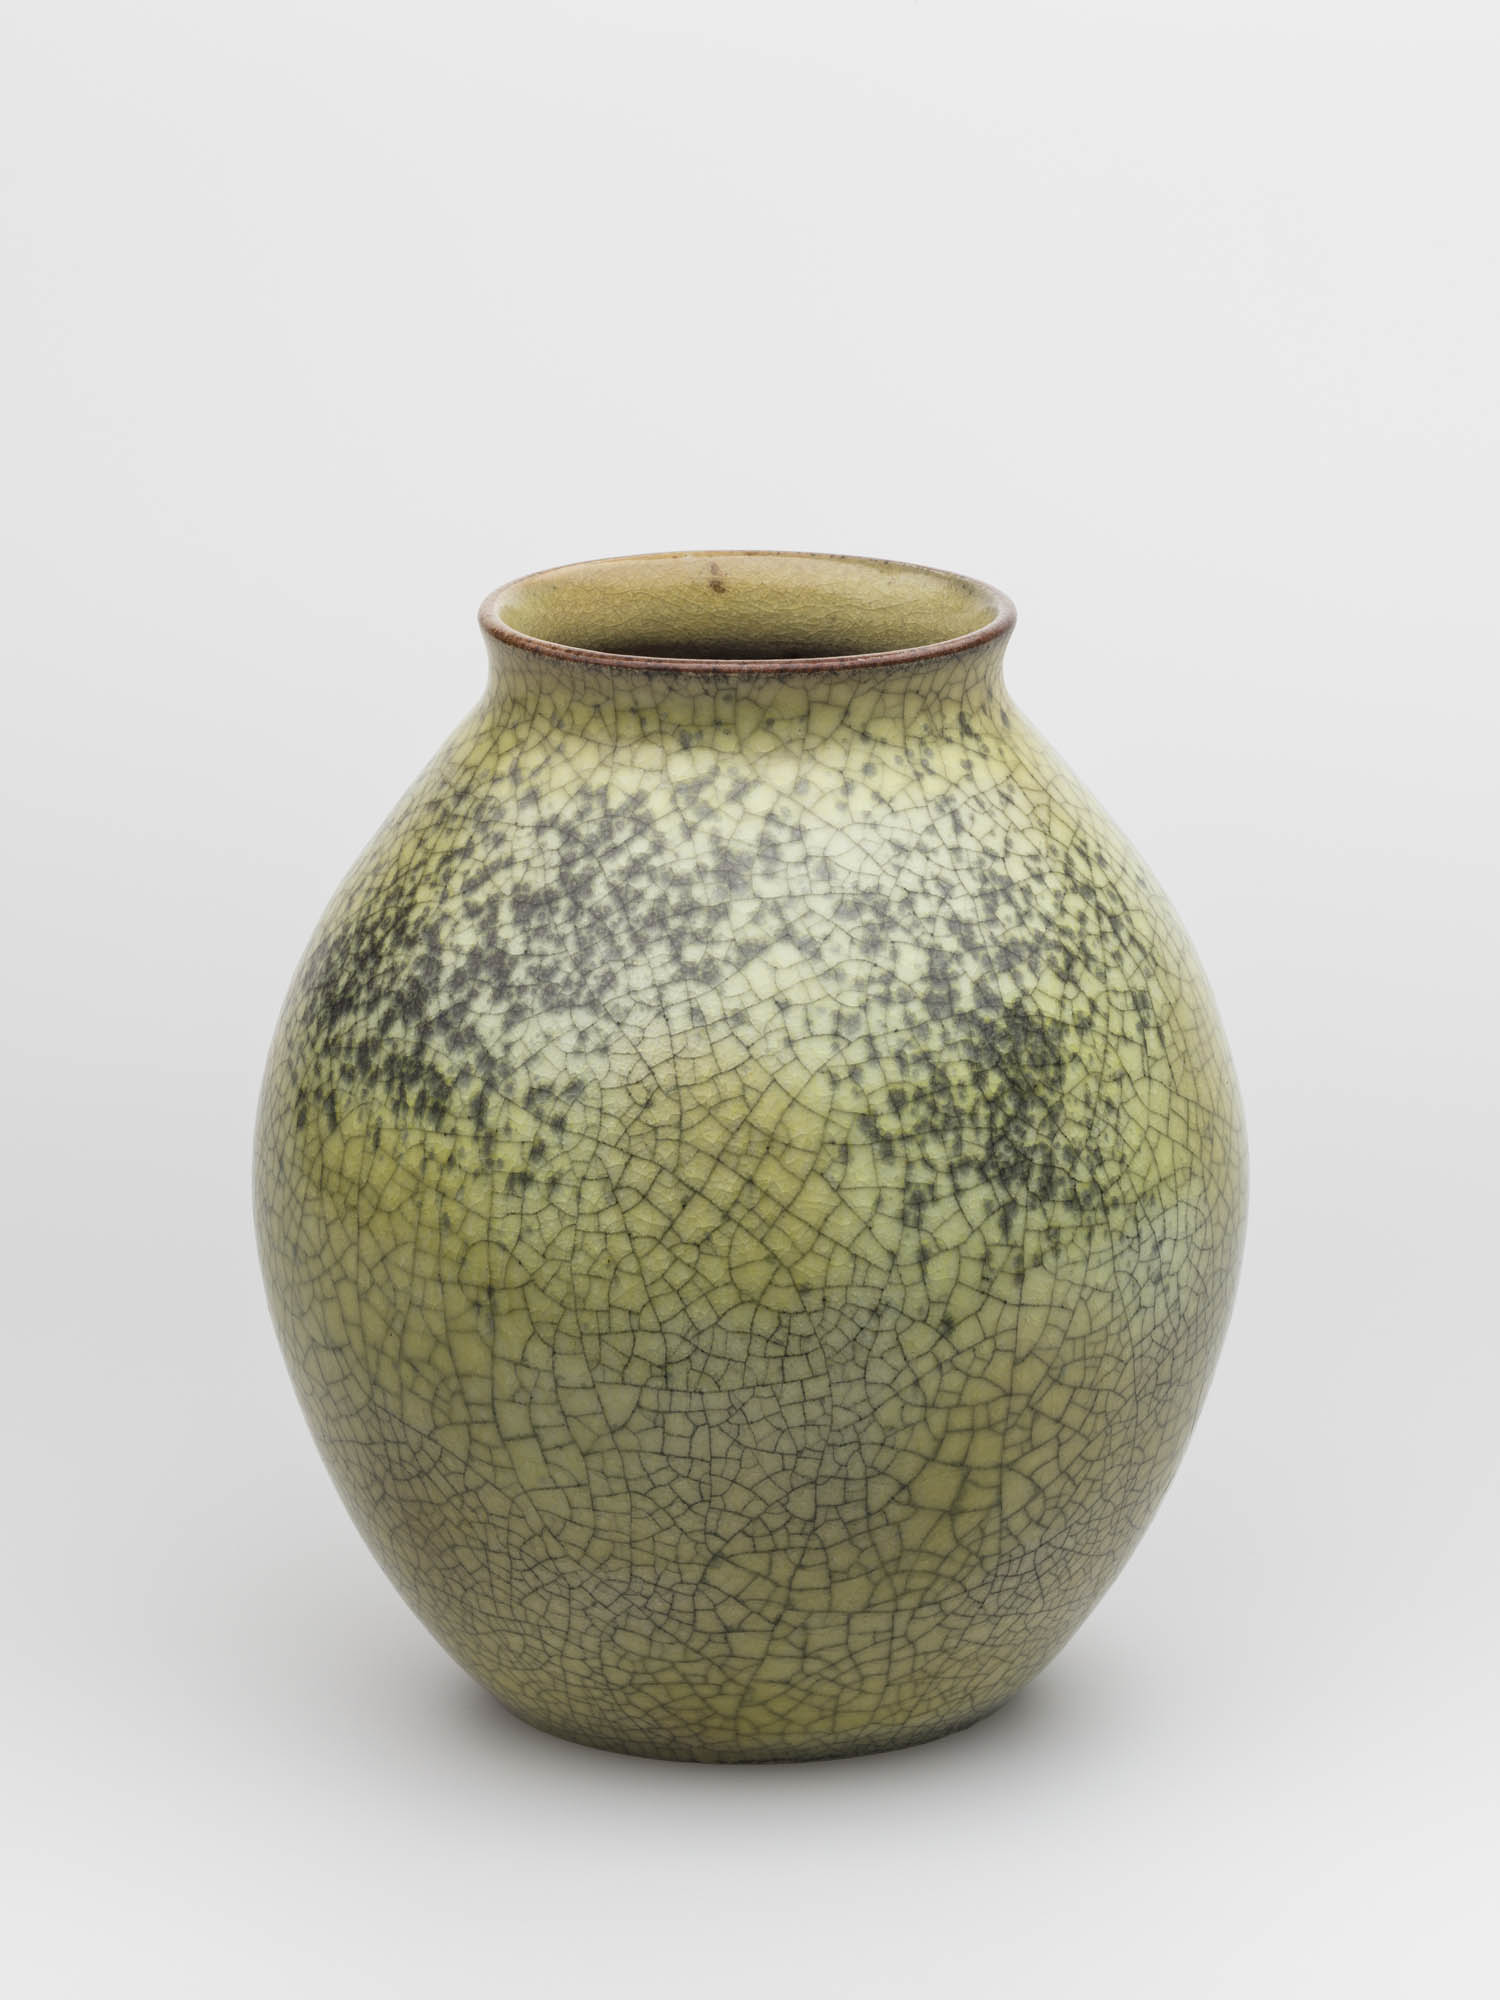 (ohne Titel) Keramische Werkstätte Alsiko Uster Vase